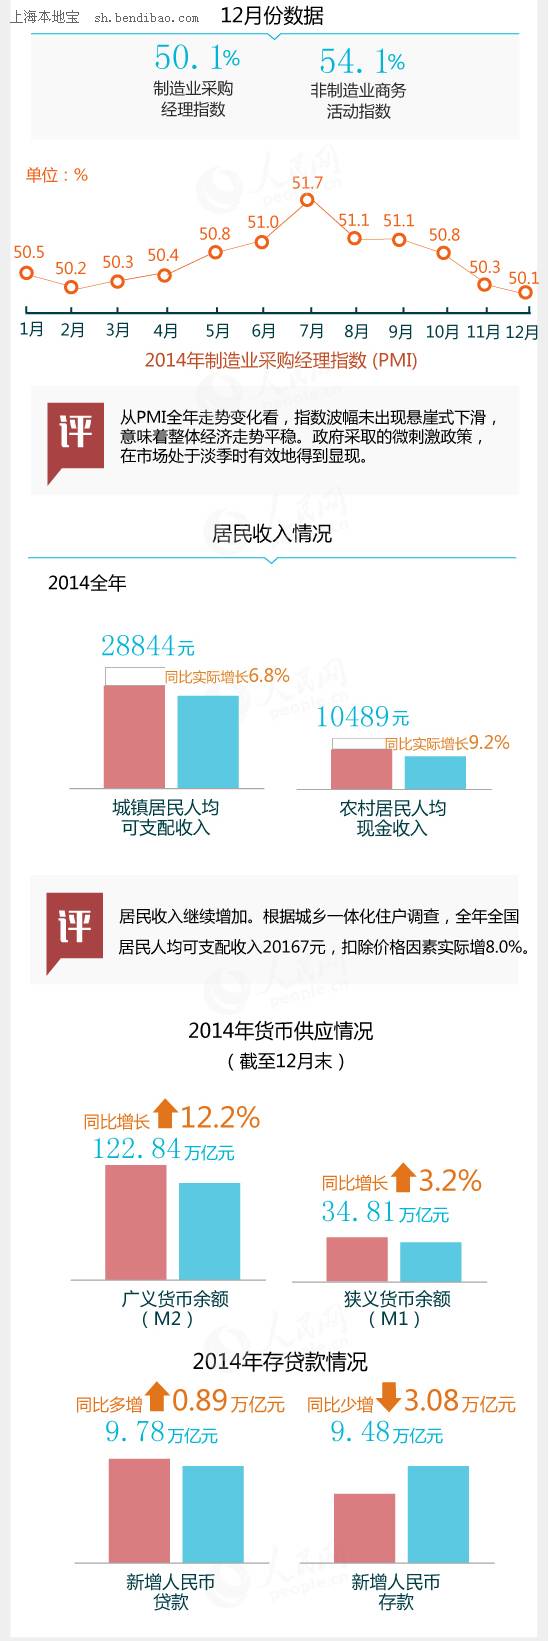 2014全国GDP增速为7.4% 图解2014中国经济